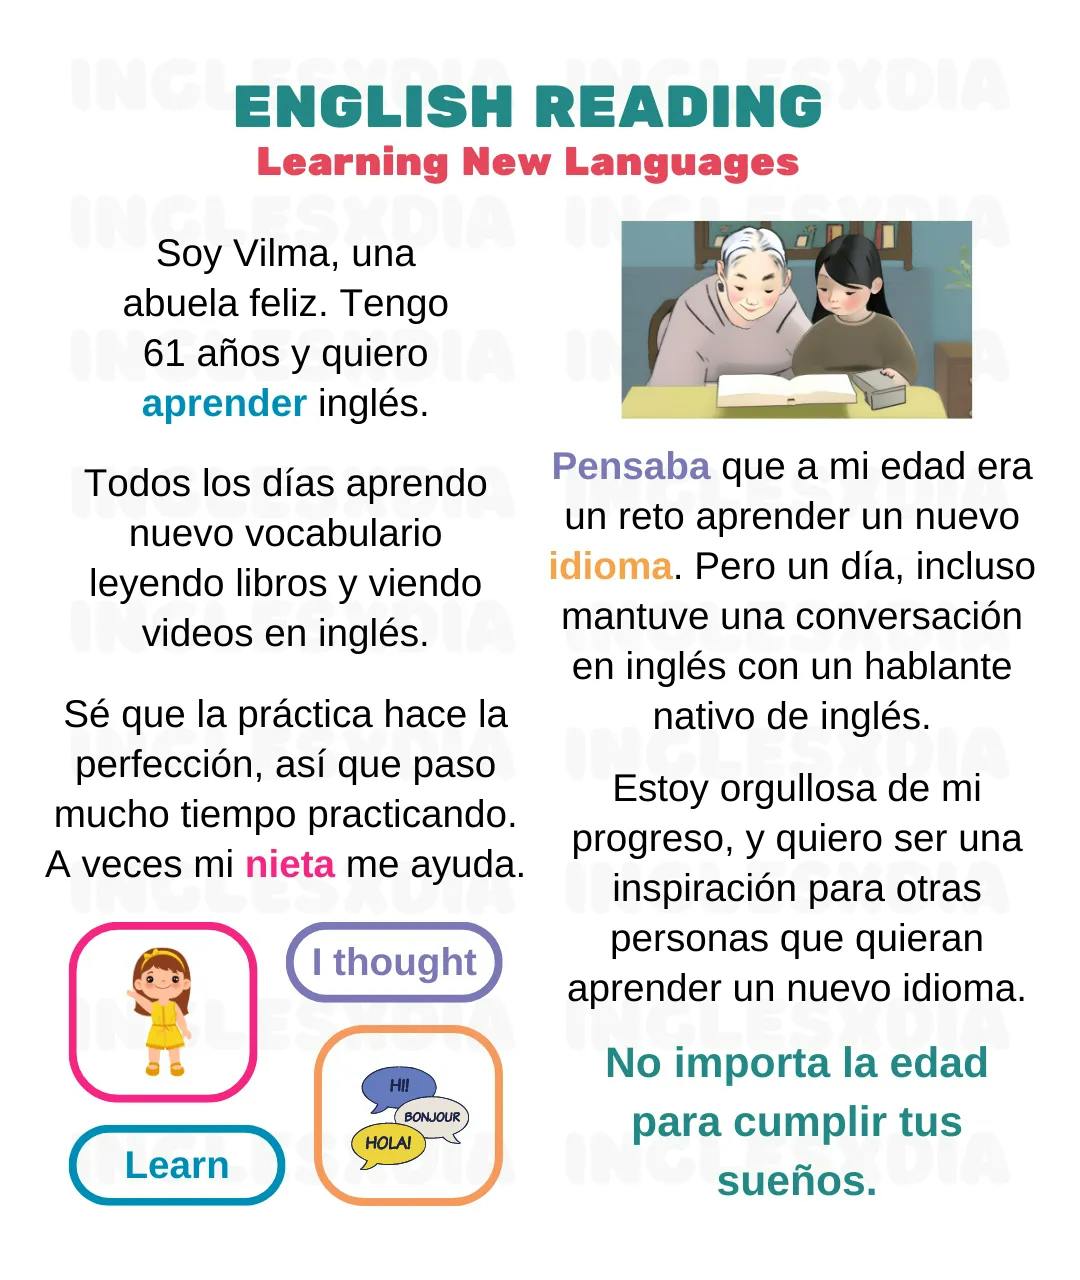 Curso de inglés en línea: Lectura corta ·Learning New Languages